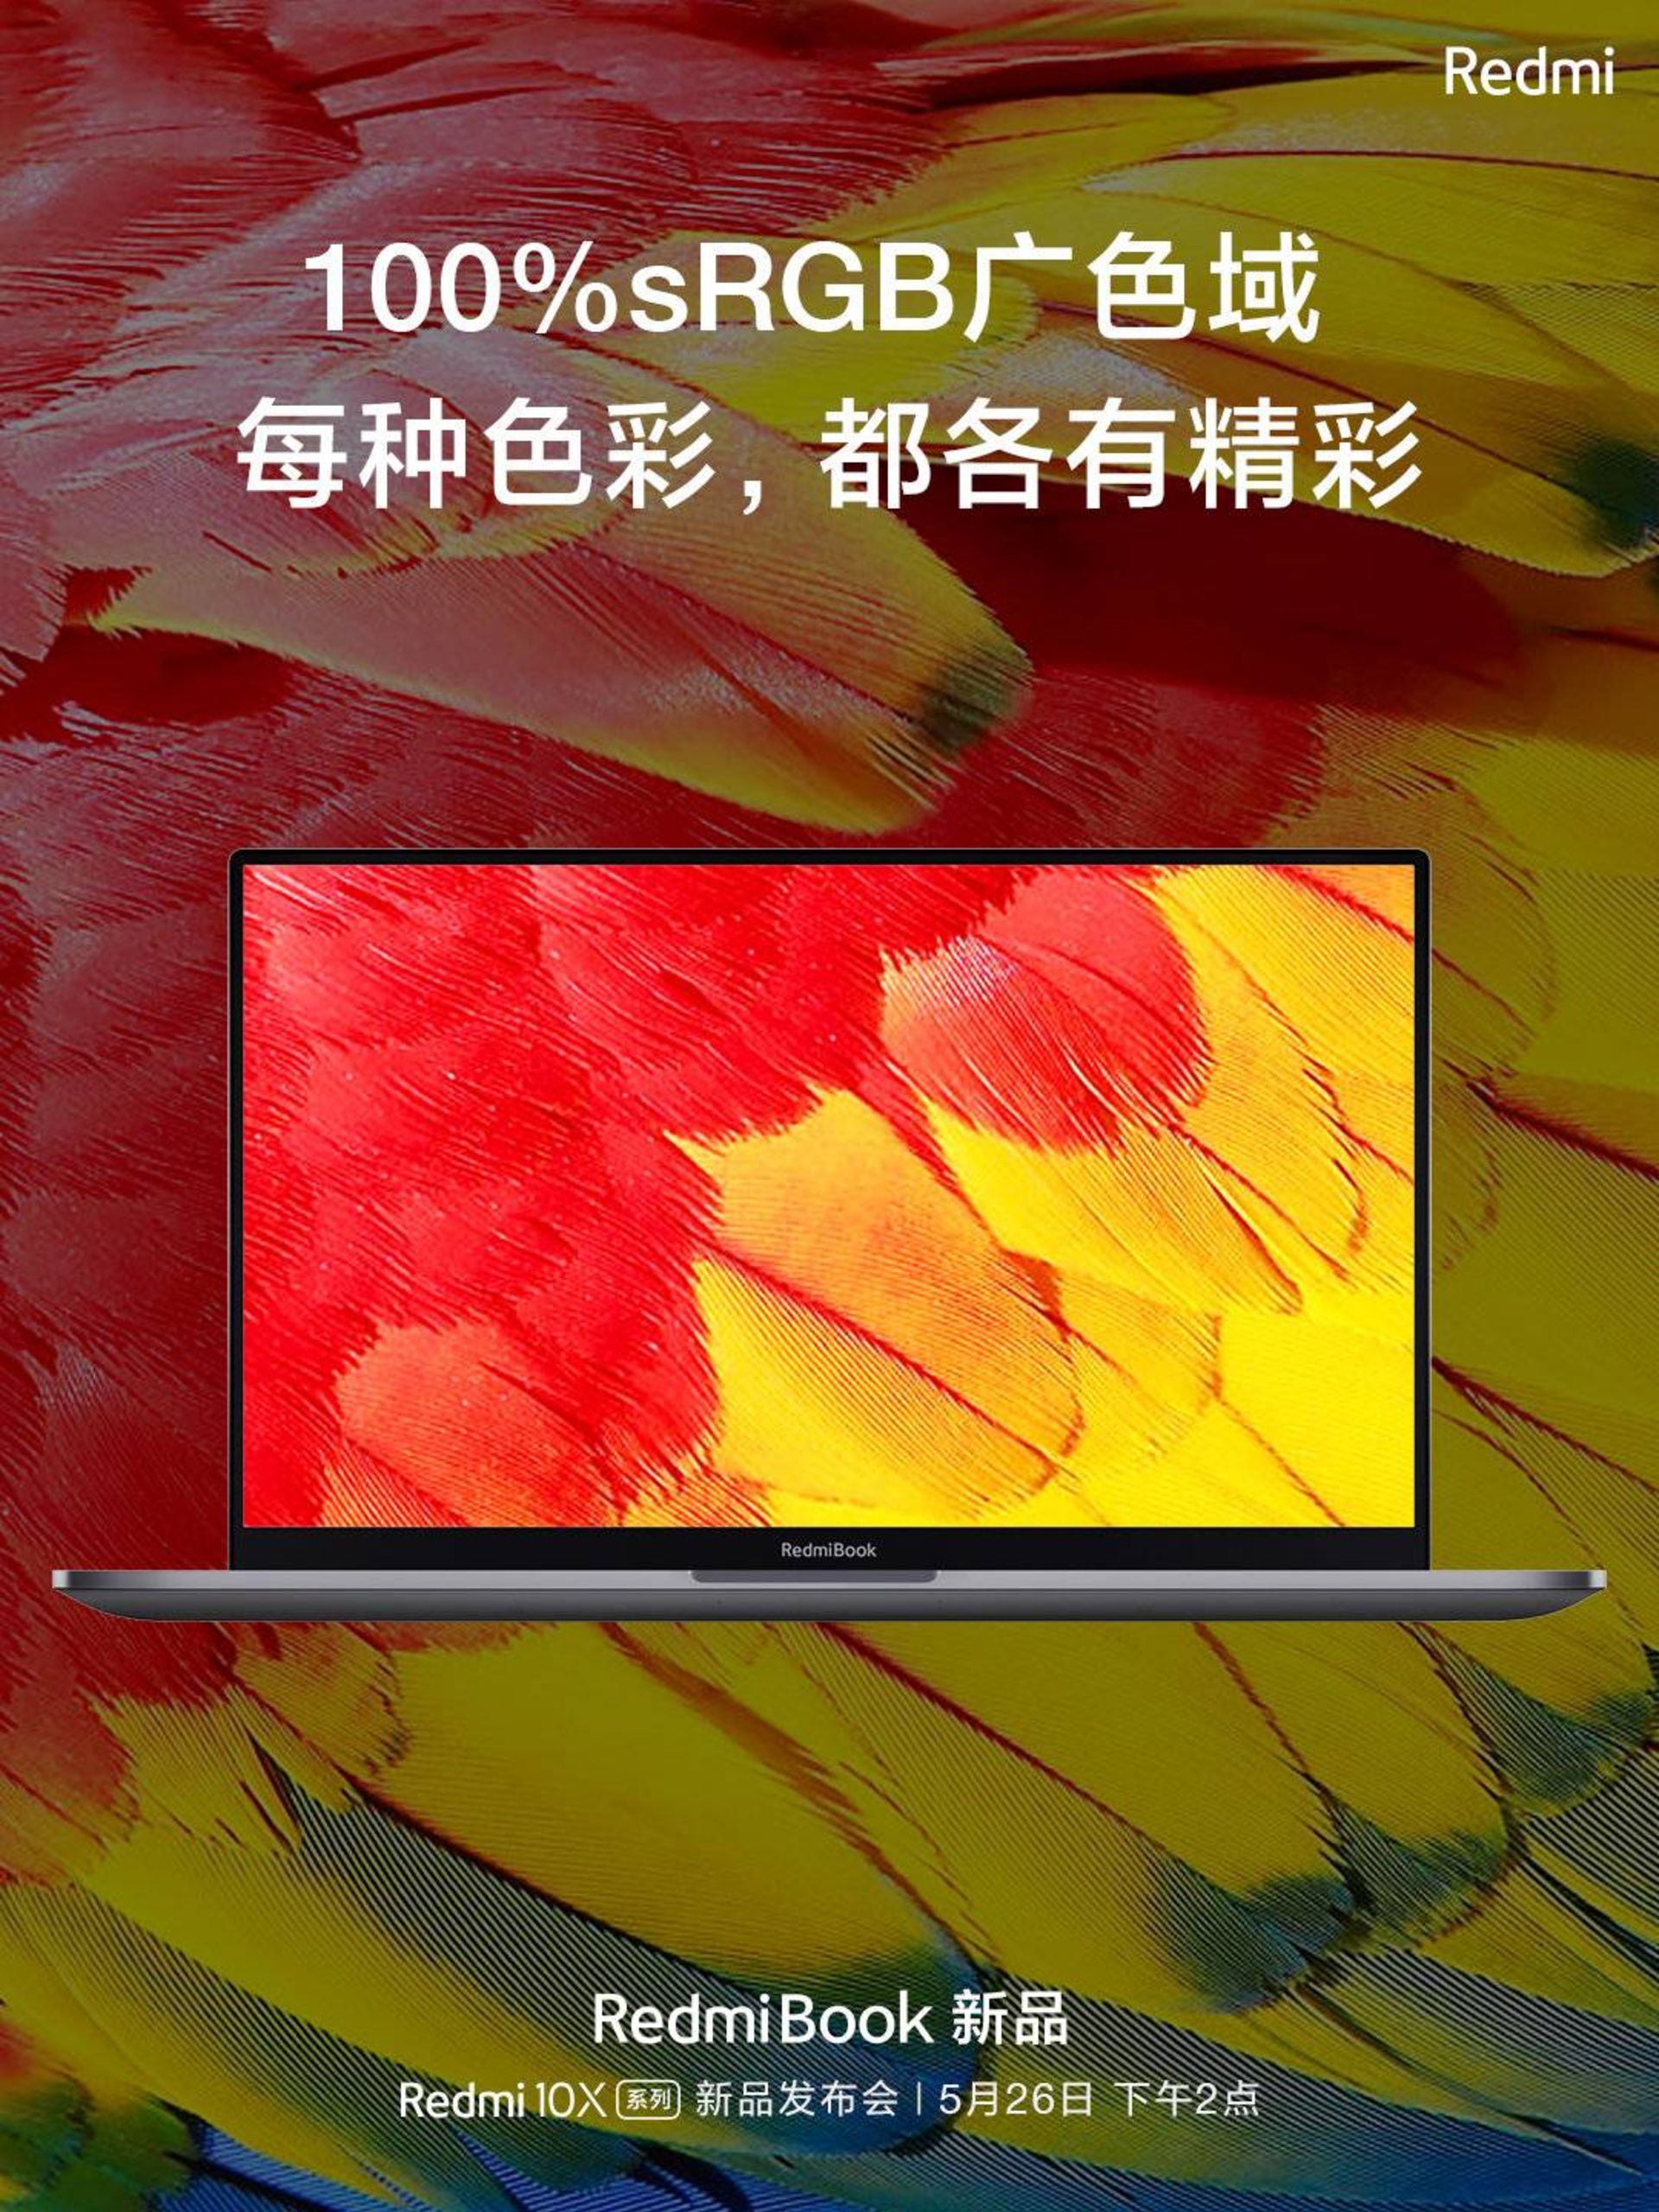 لپ تاپ ردمی بوک 16.1 اینچ شیائومی / Xiaomi Redmibook 16.1 inch